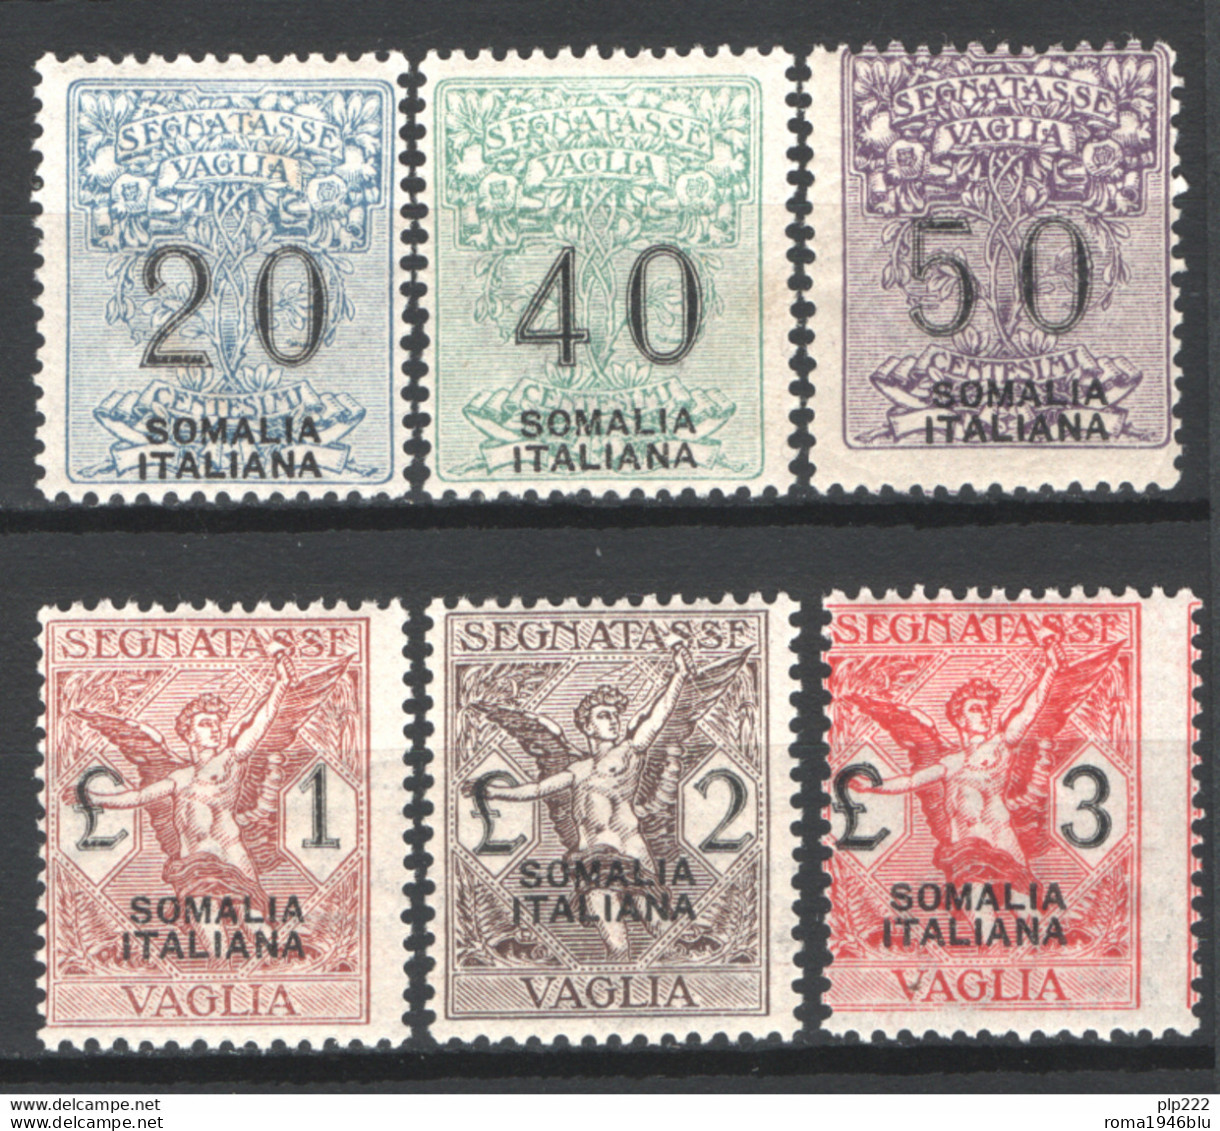 Somalia 1926 Segnatasse Vaglia Sass.SV7/12 **/MNH VF/F - Somalië